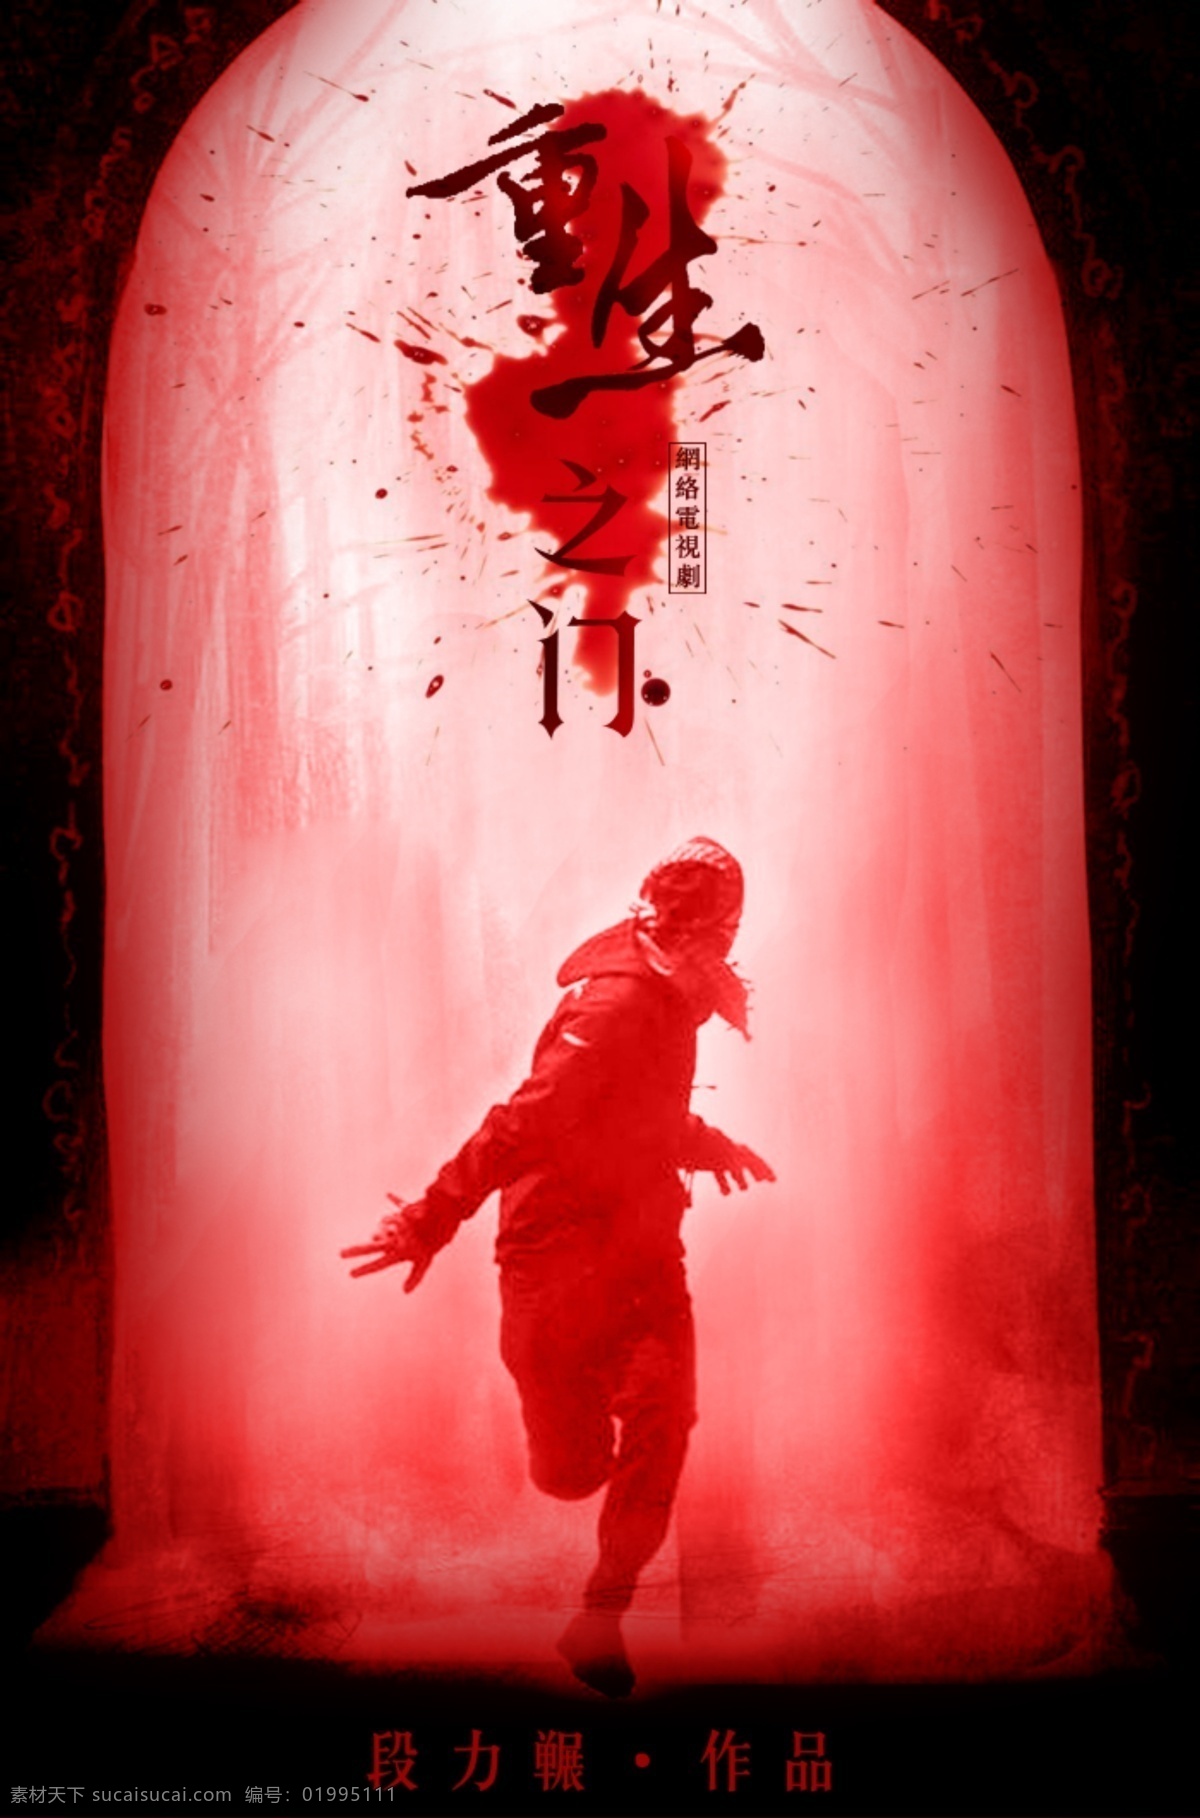 重生之门设计 重生之门 诡异设计 血腥逃跑 血迹素材 红色门 文化艺术 影视娱乐